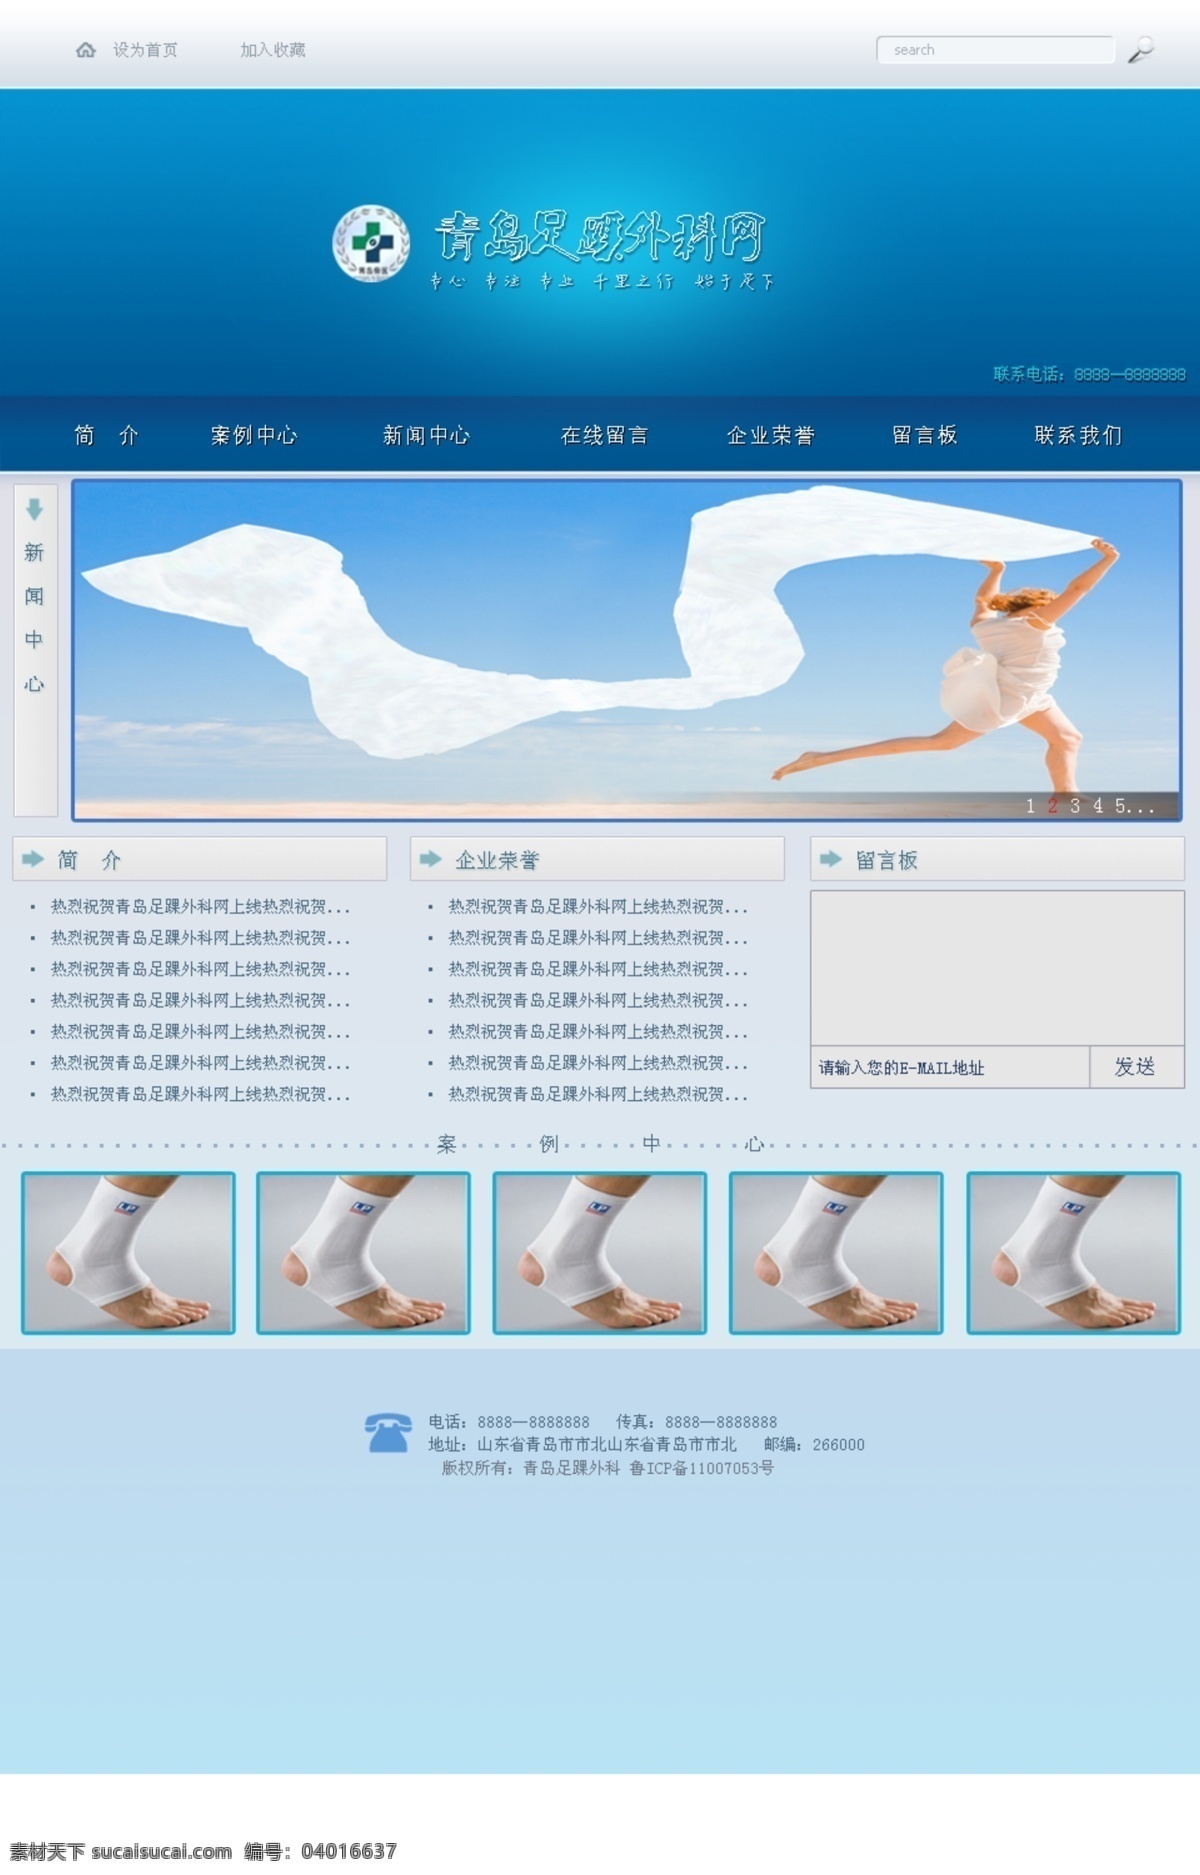 按钮 网页 网页模板 网站 医疗网页 源文件 中文模板 医疗 网页素材 足踝 中国医疗